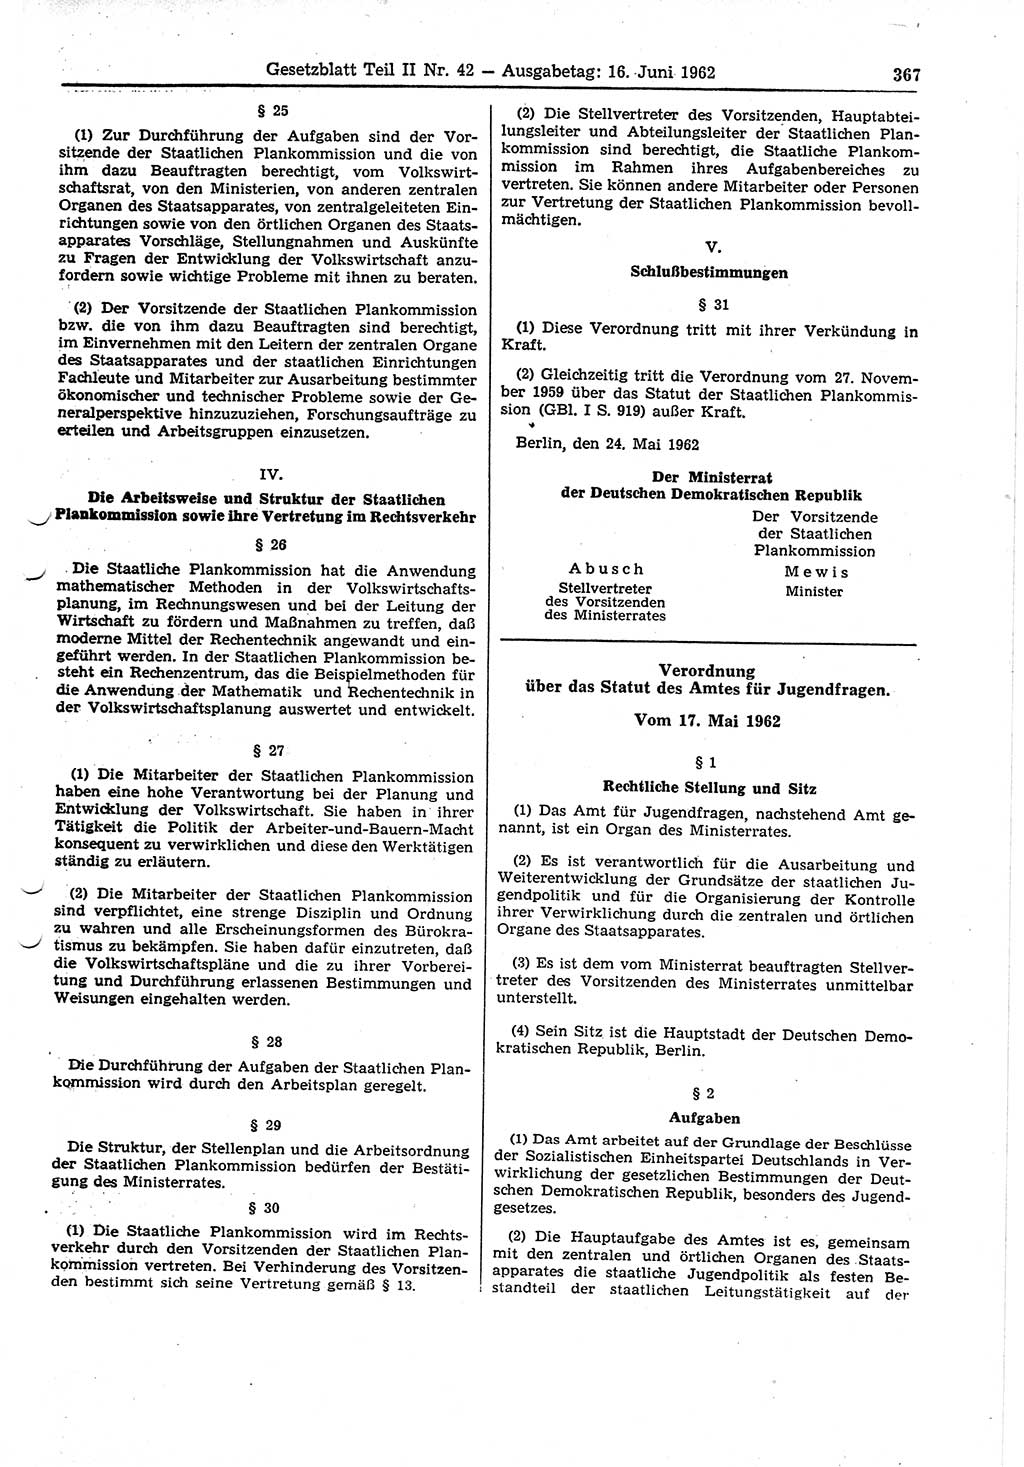 Gesetzblatt (GBl.) der Deutschen Demokratischen Republik (DDR) Teil ⅠⅠ 1962, Seite 367 (GBl. DDR ⅠⅠ 1962, S. 367)